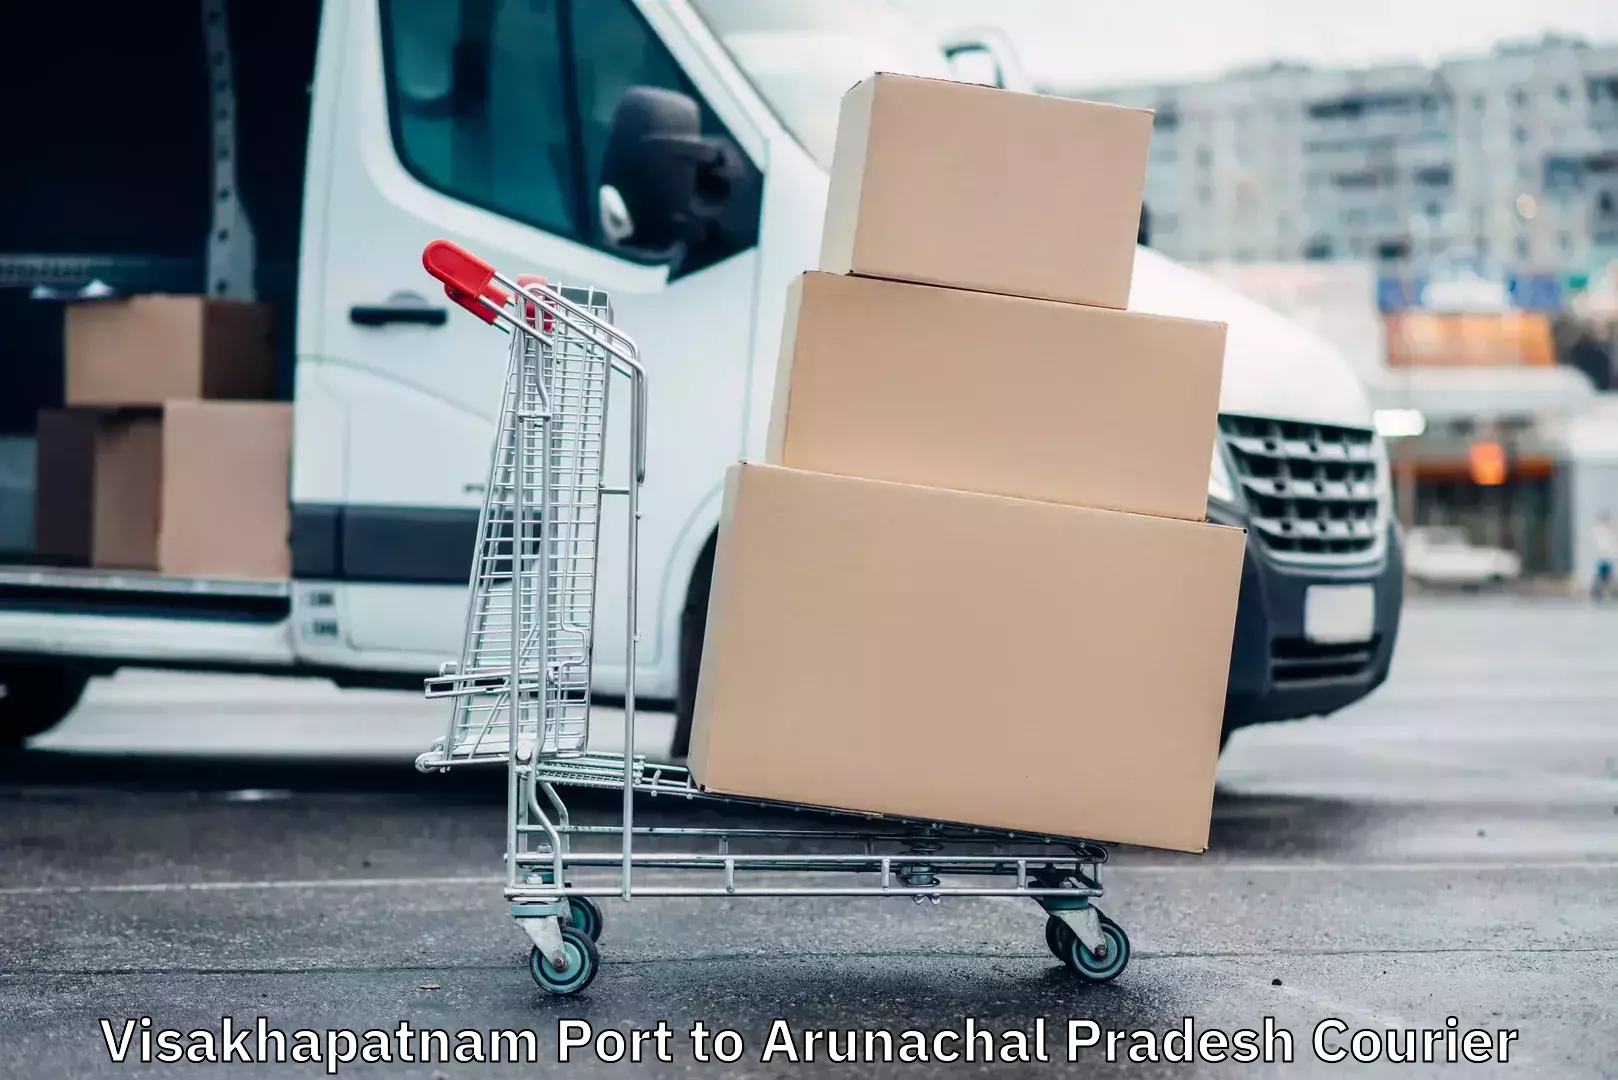 Modern delivery technologies Visakhapatnam Port to Arunachal Pradesh